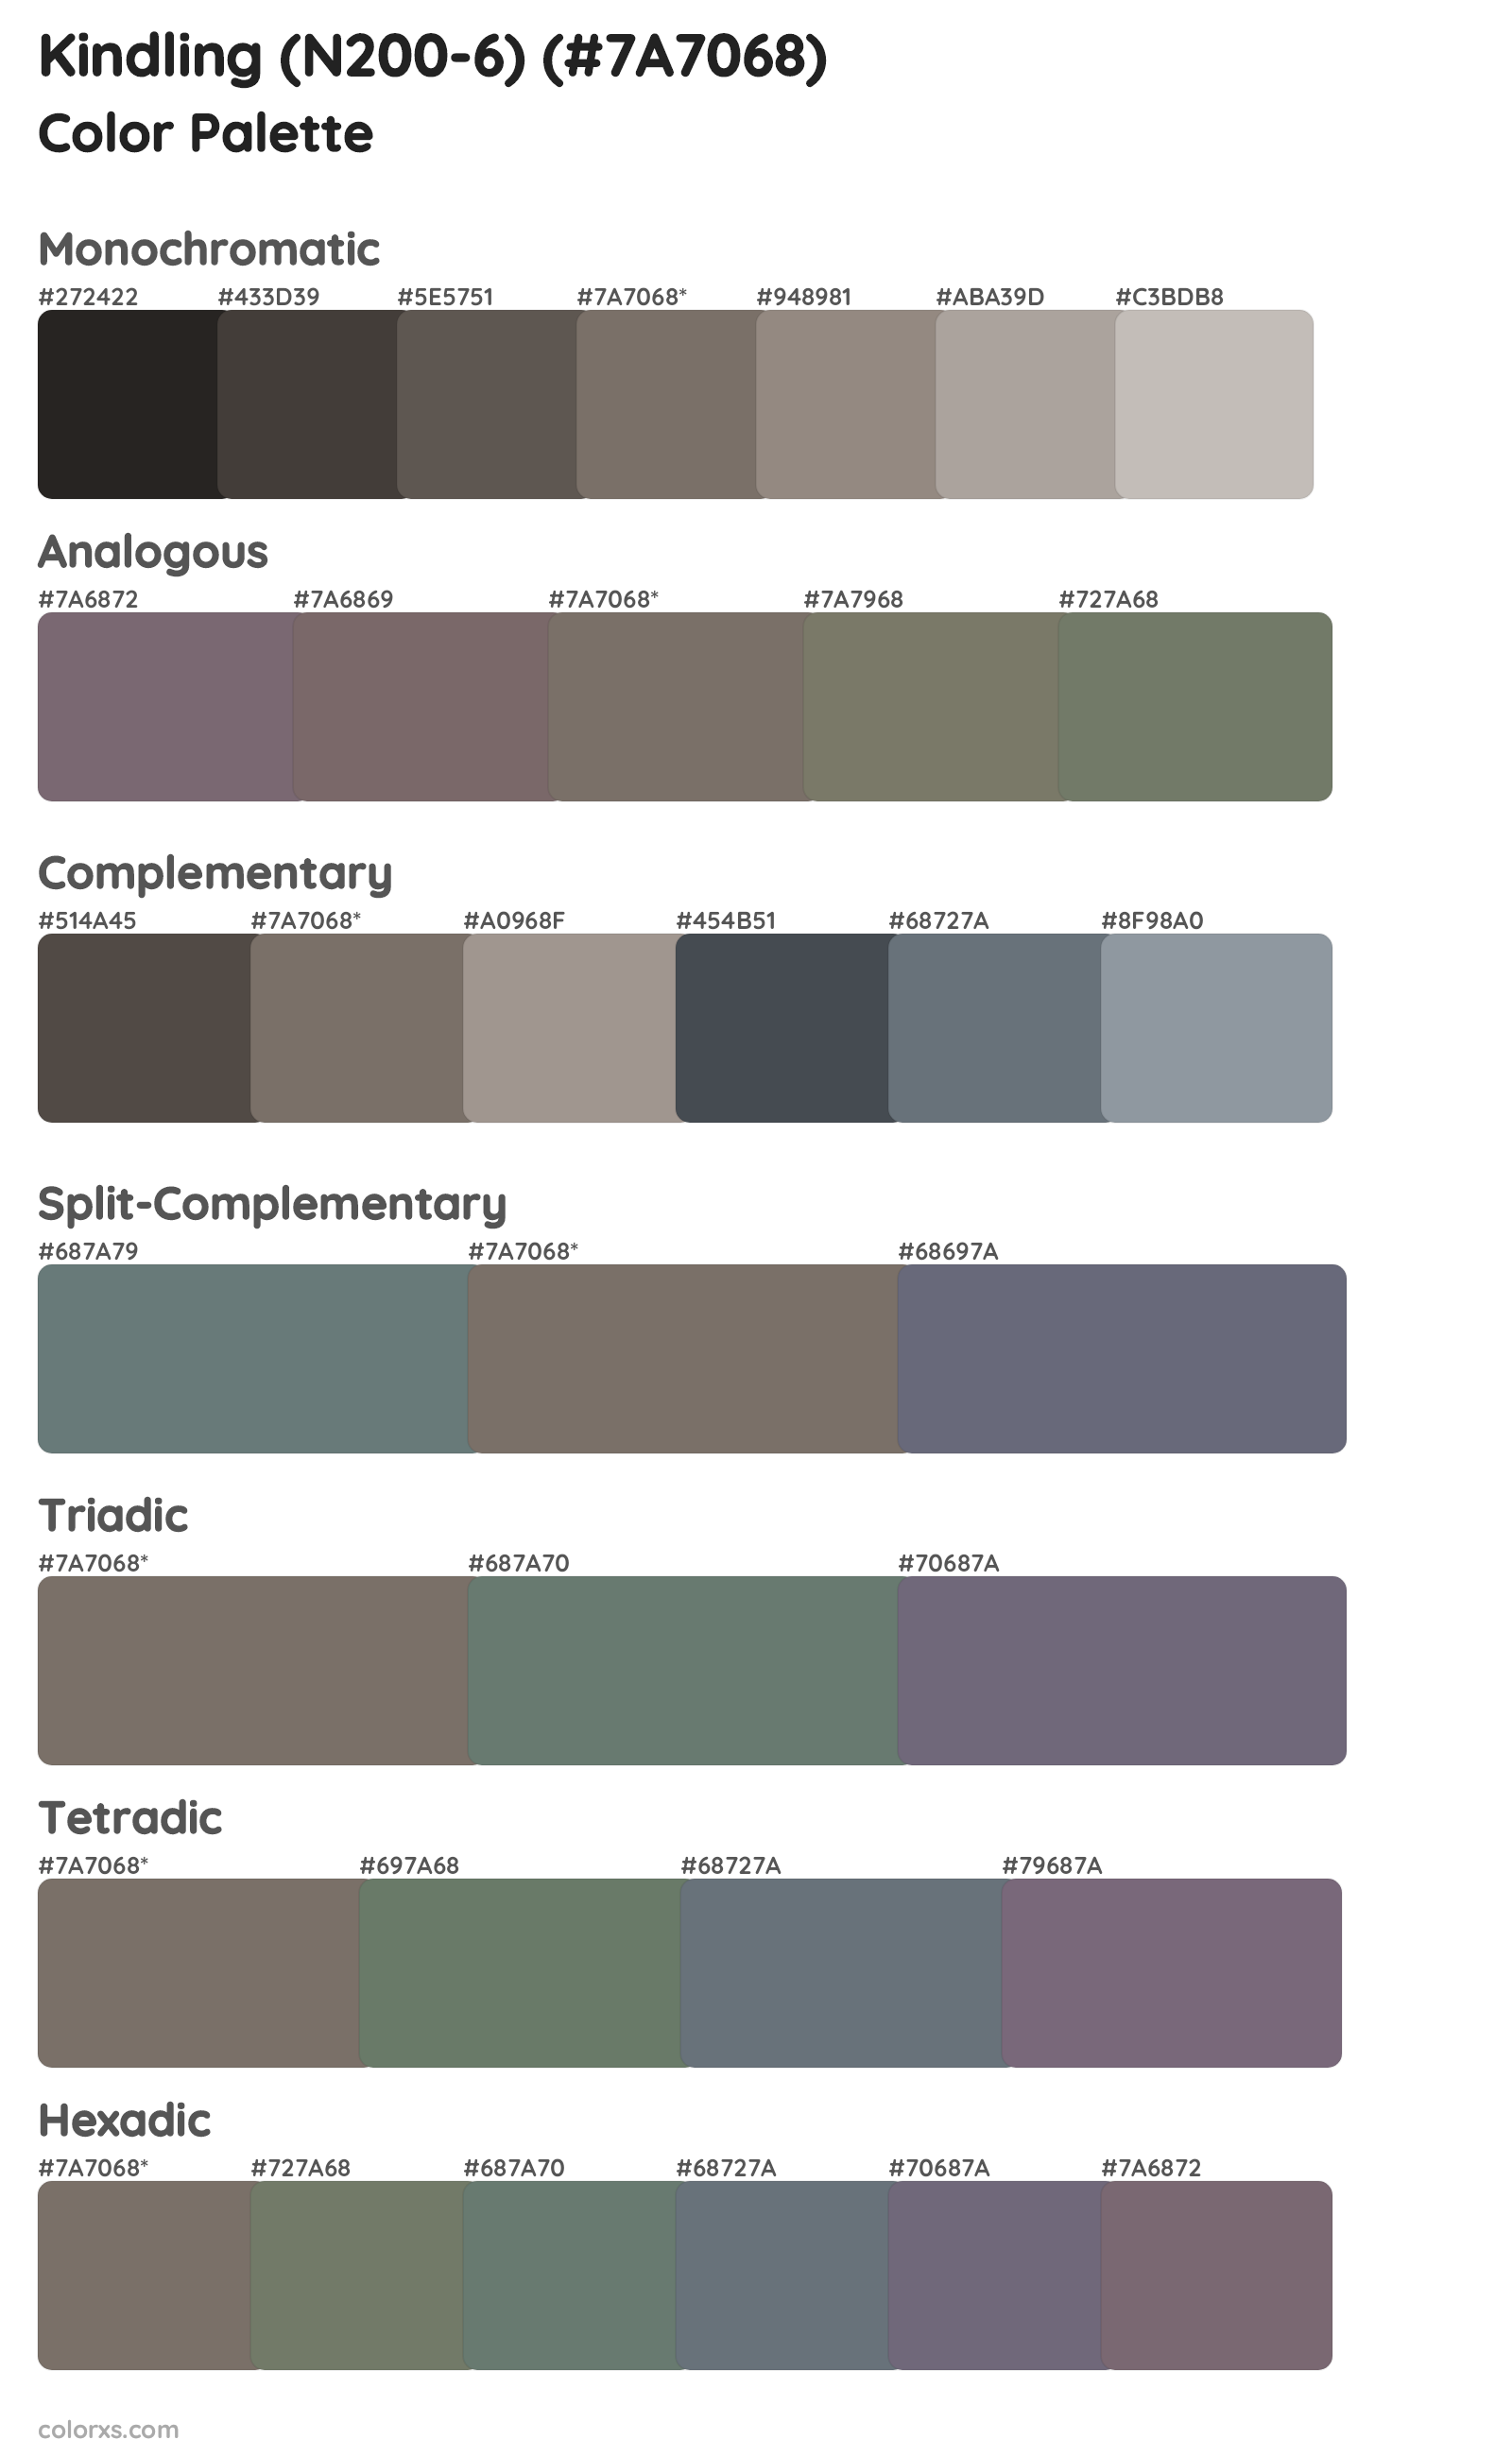 Kindling (N200-6) Color Scheme Palettes